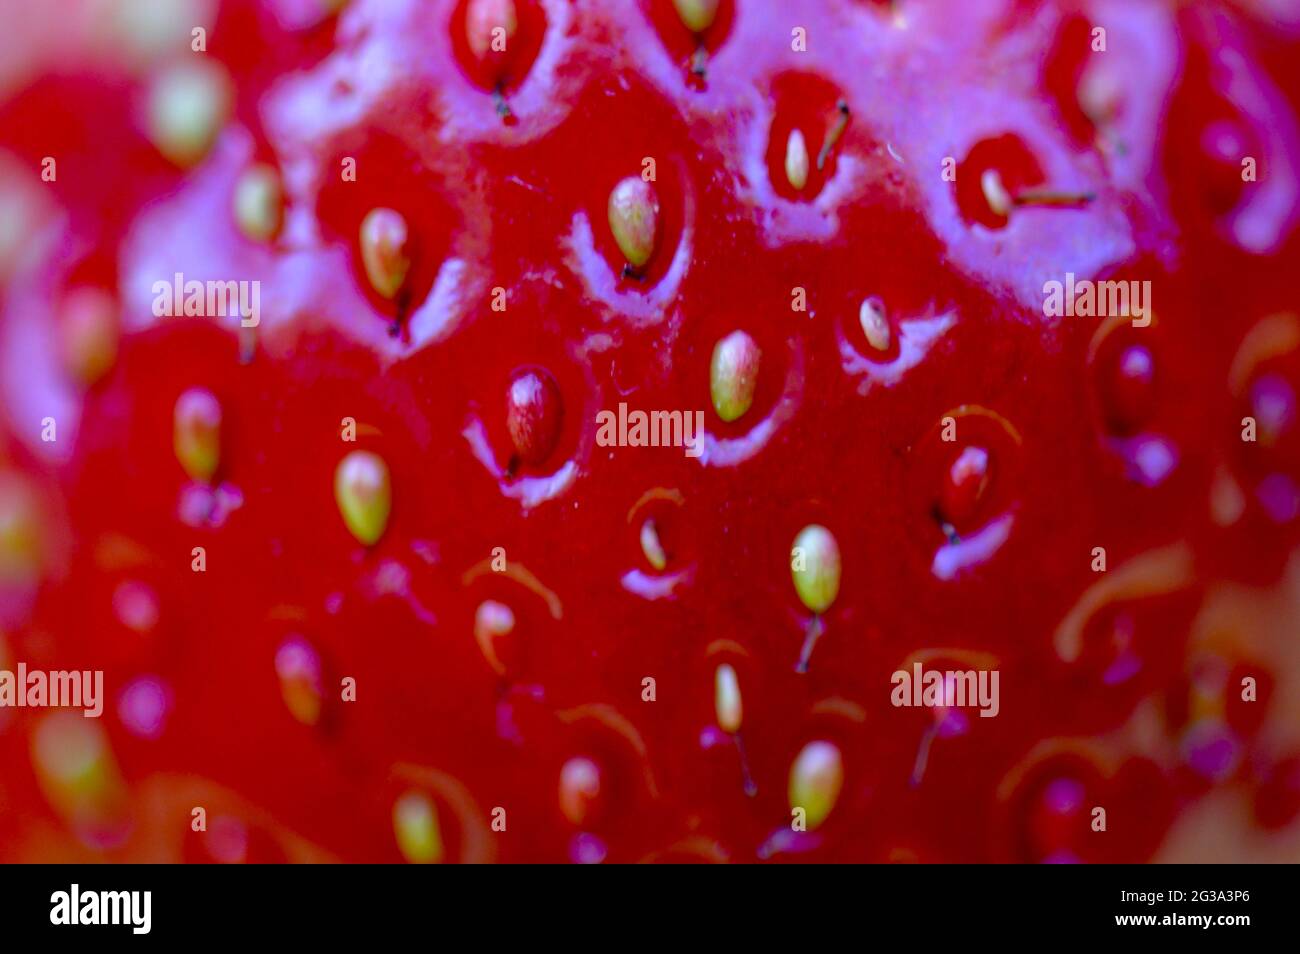 Nahaufnahme einer herrlichen roten frisch gepflückten Erdbeere aus dem eigenen Garten Stock Photo